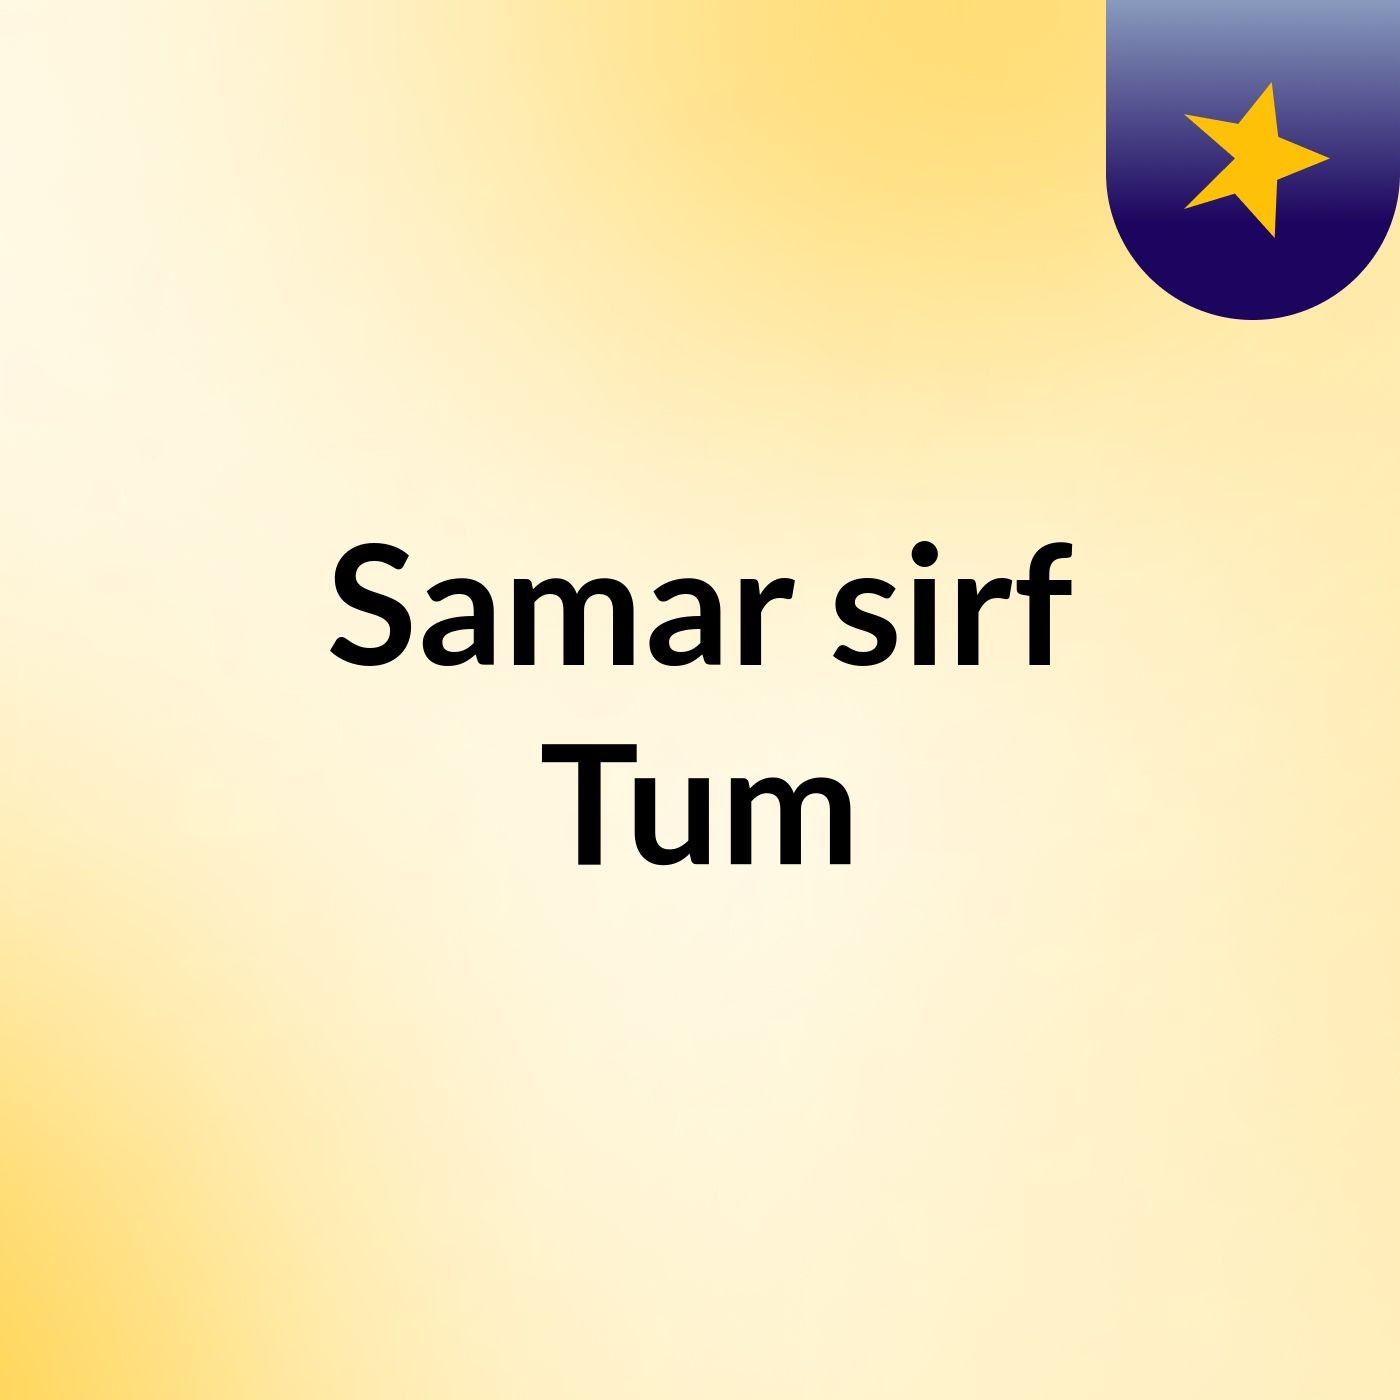 Episode 32 - Samar sirf Tum